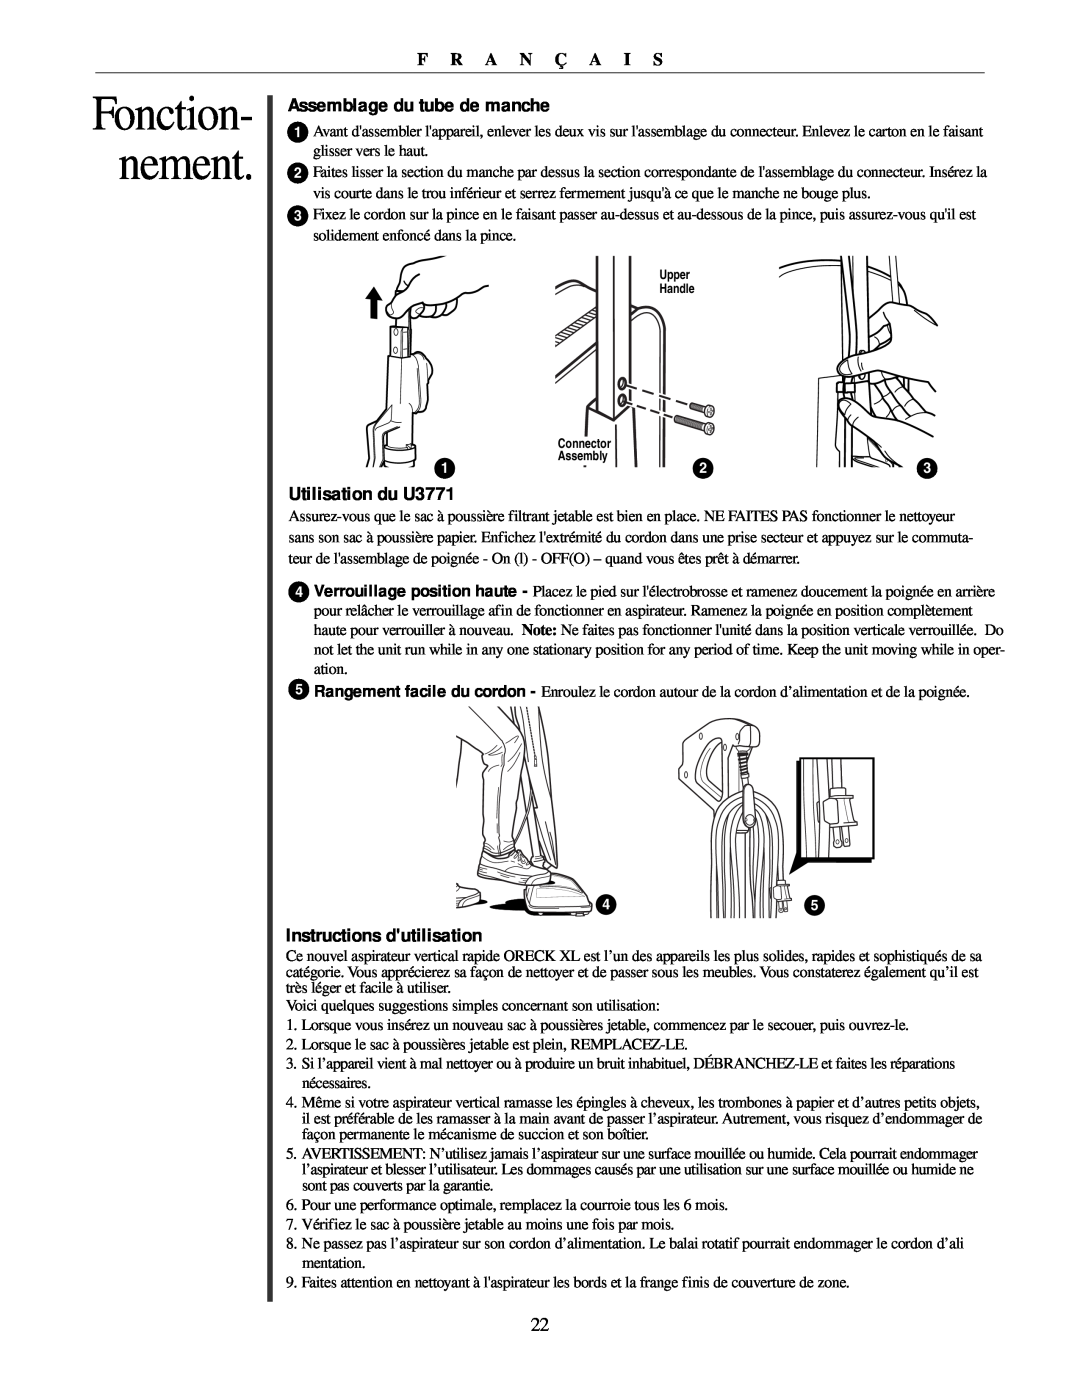 Oreck Assemblage du tube de manche, Utilisation du U3771, Instructions dutilisation, Fonction- nement, F R A N Ç A I S 